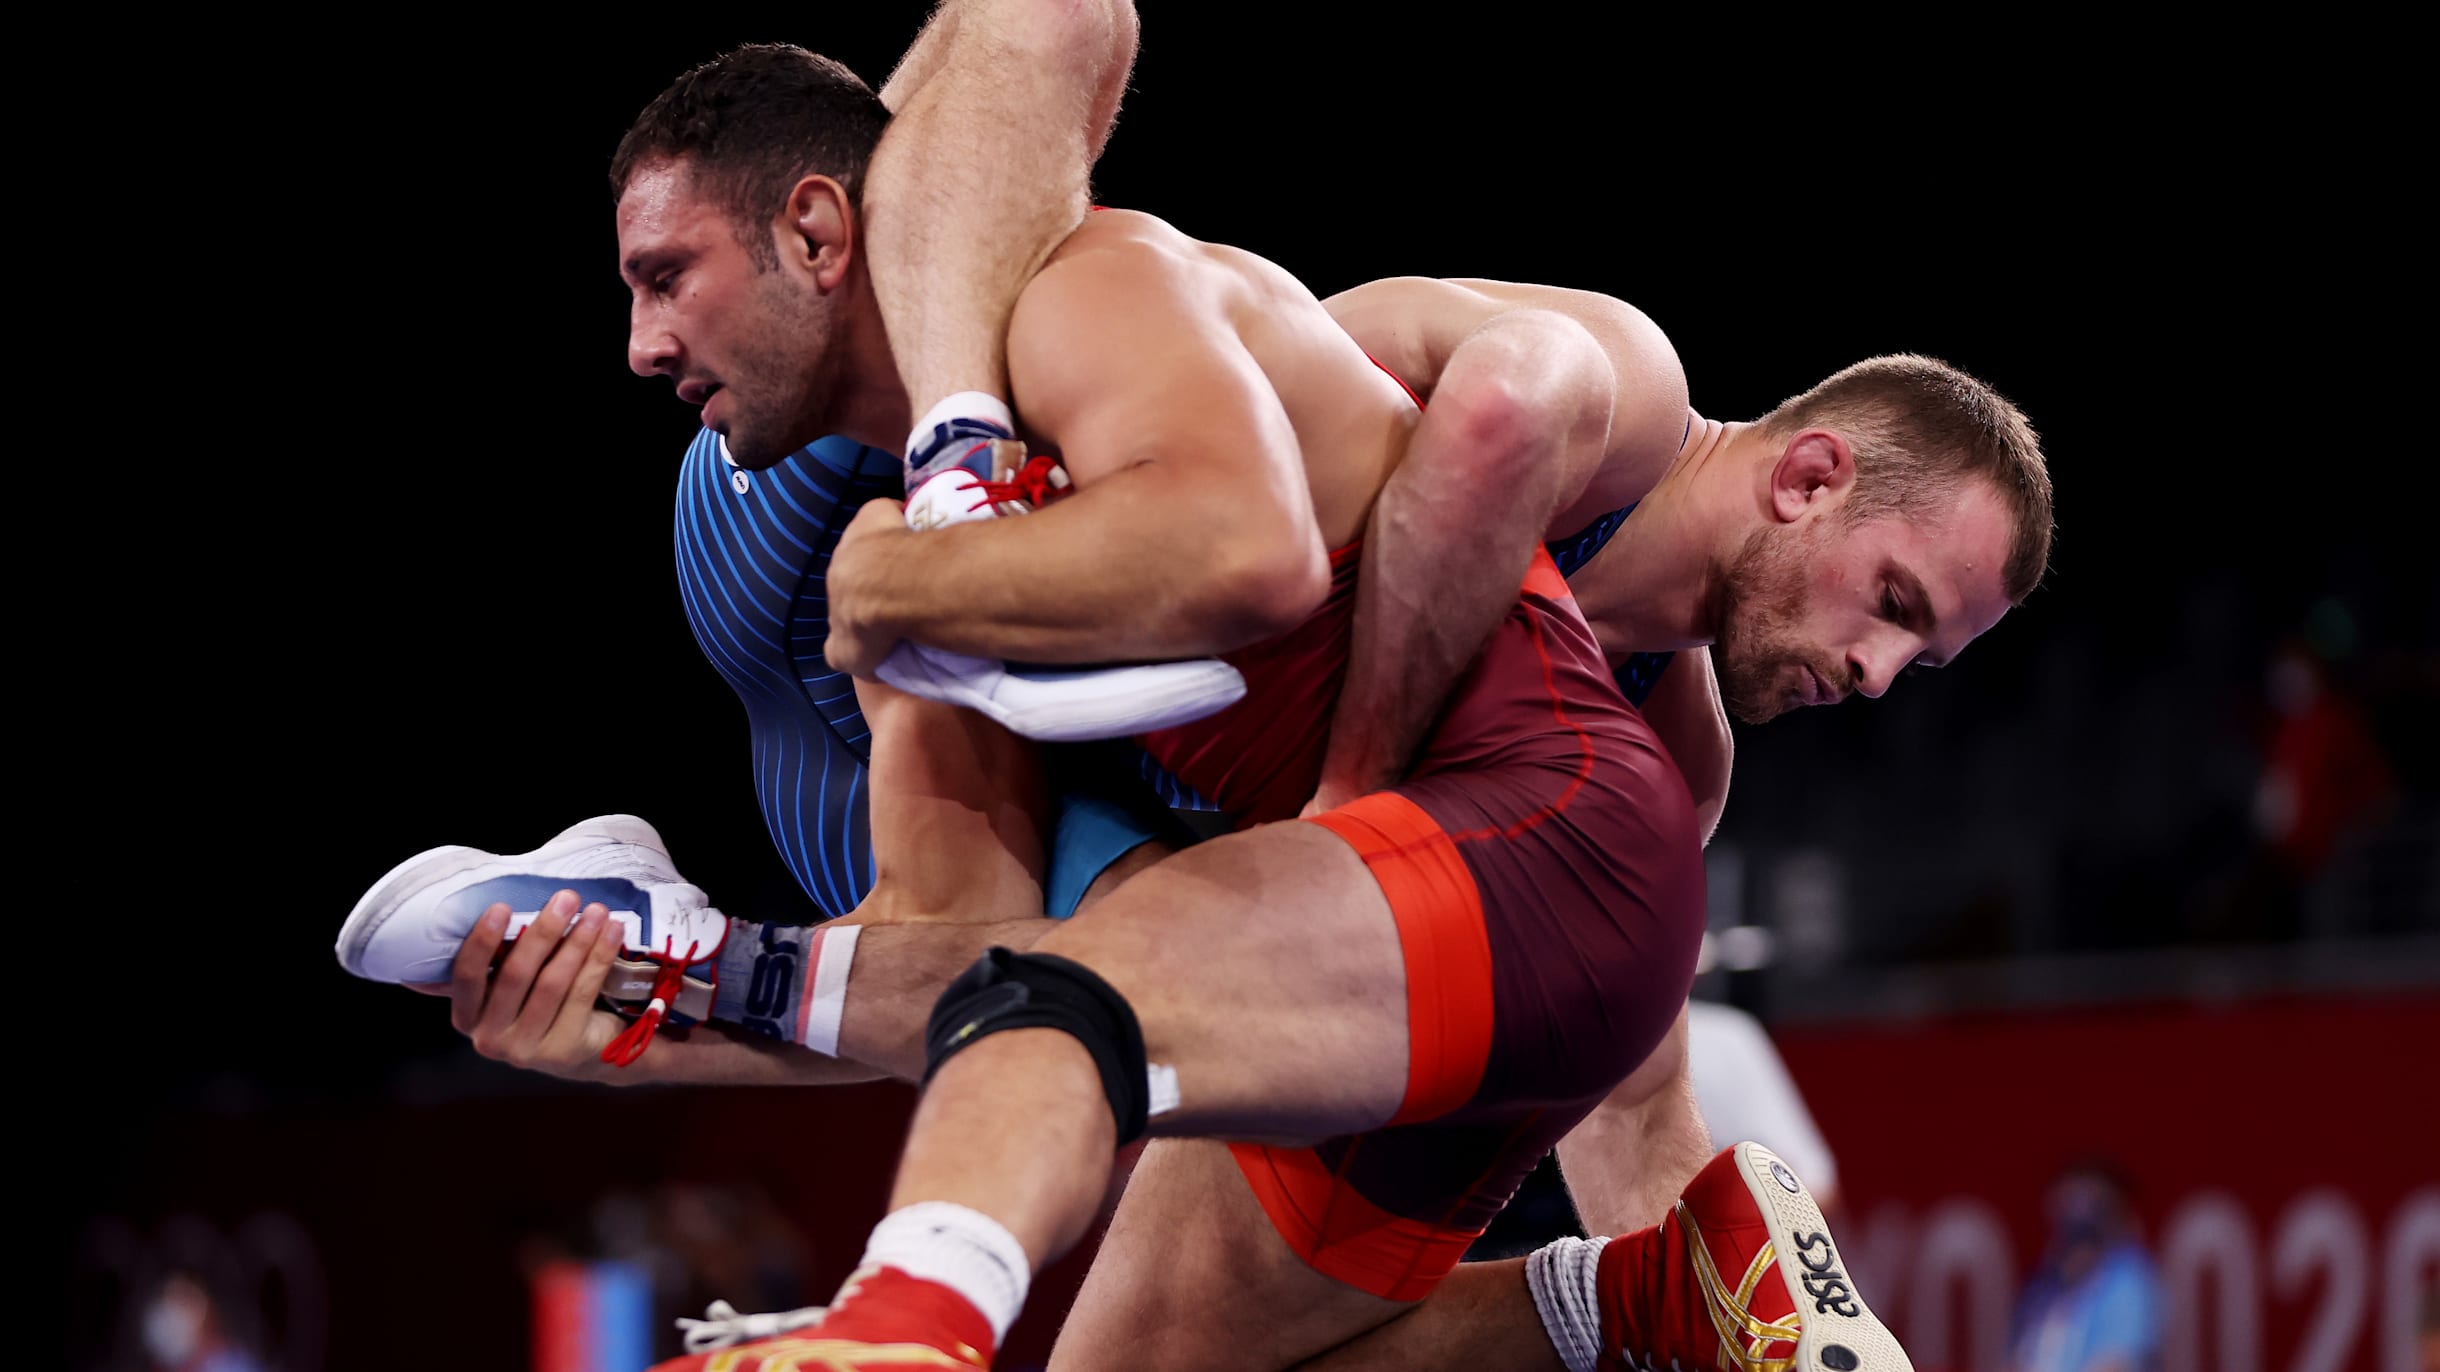 Luta (wrestling) em Paris 2024: sistema de classificação